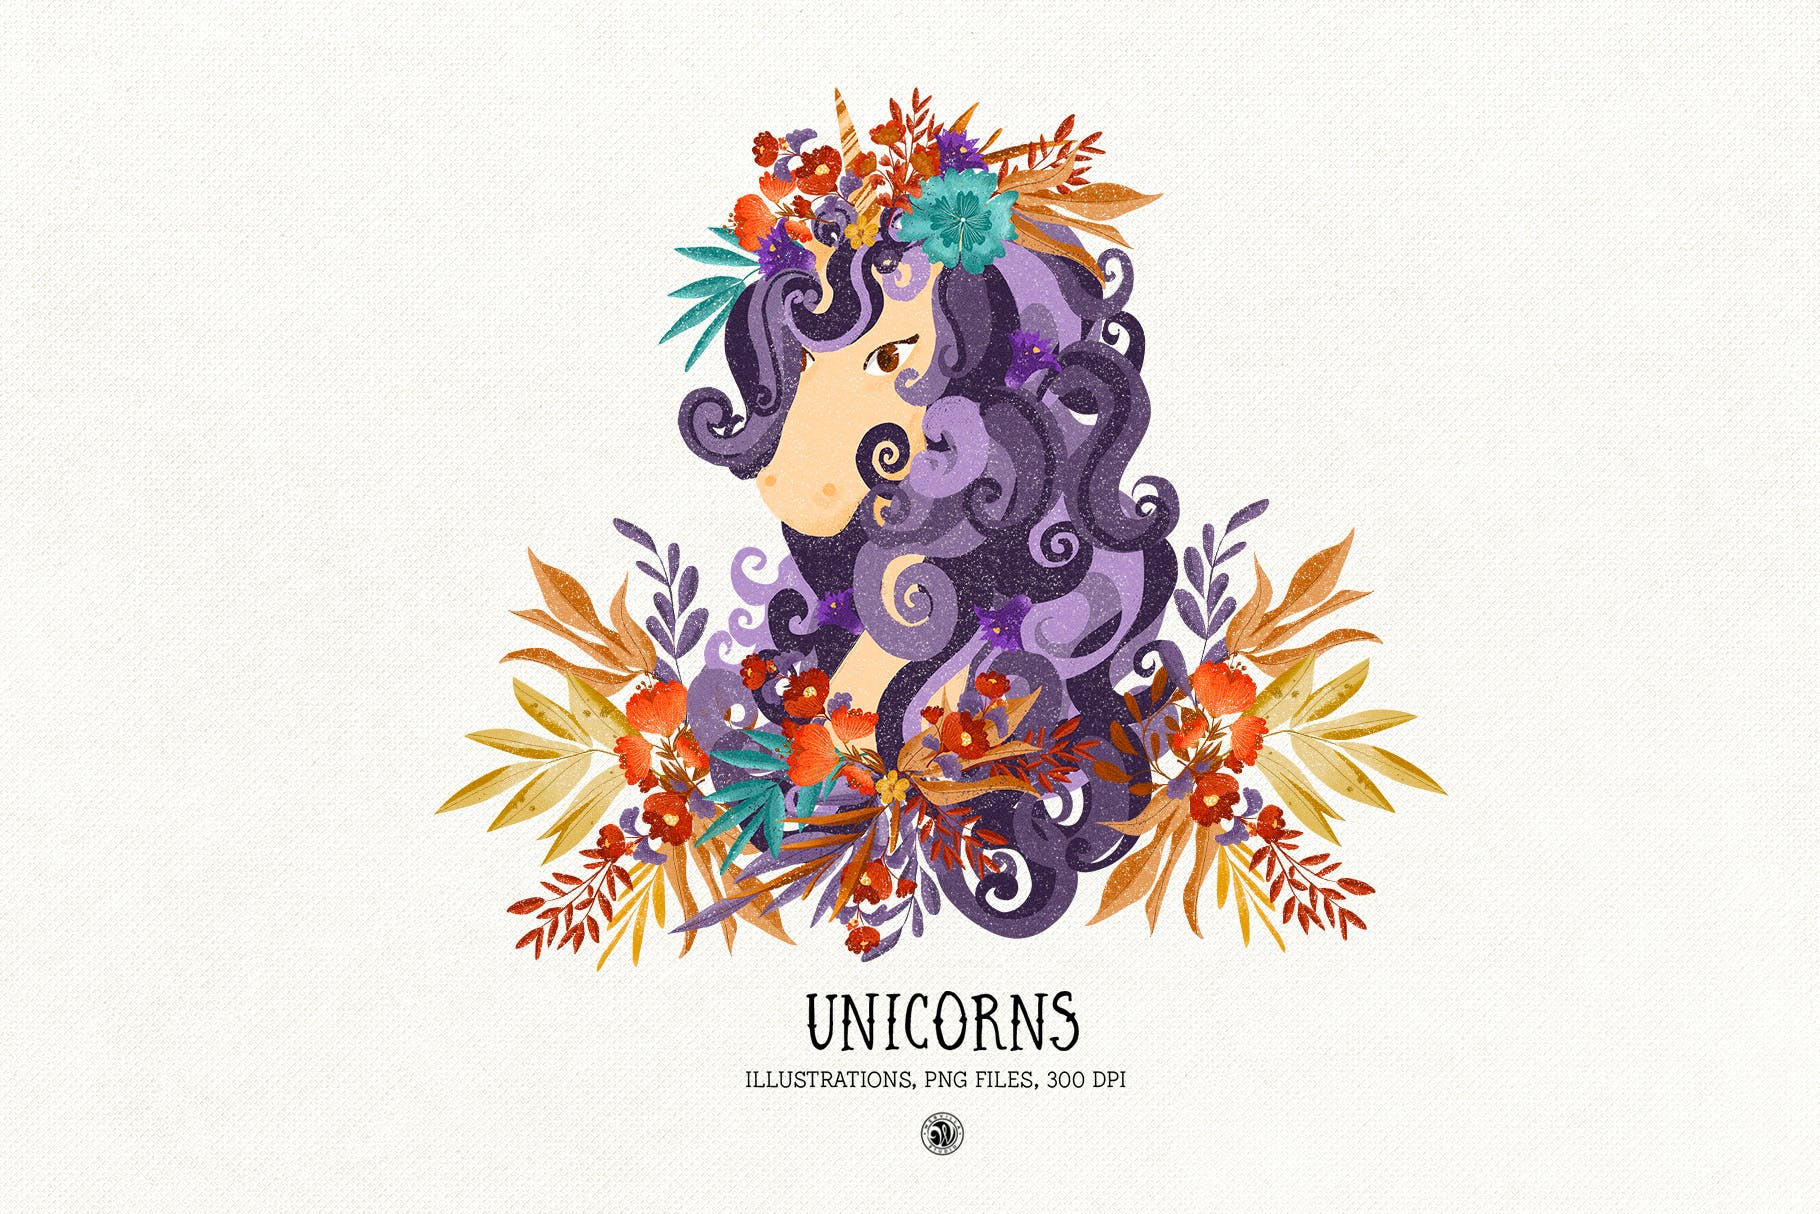 色彩丰富的独角兽素材库精选手绘插画矢量素材库精选PNG素材 Unicorns插图(1)